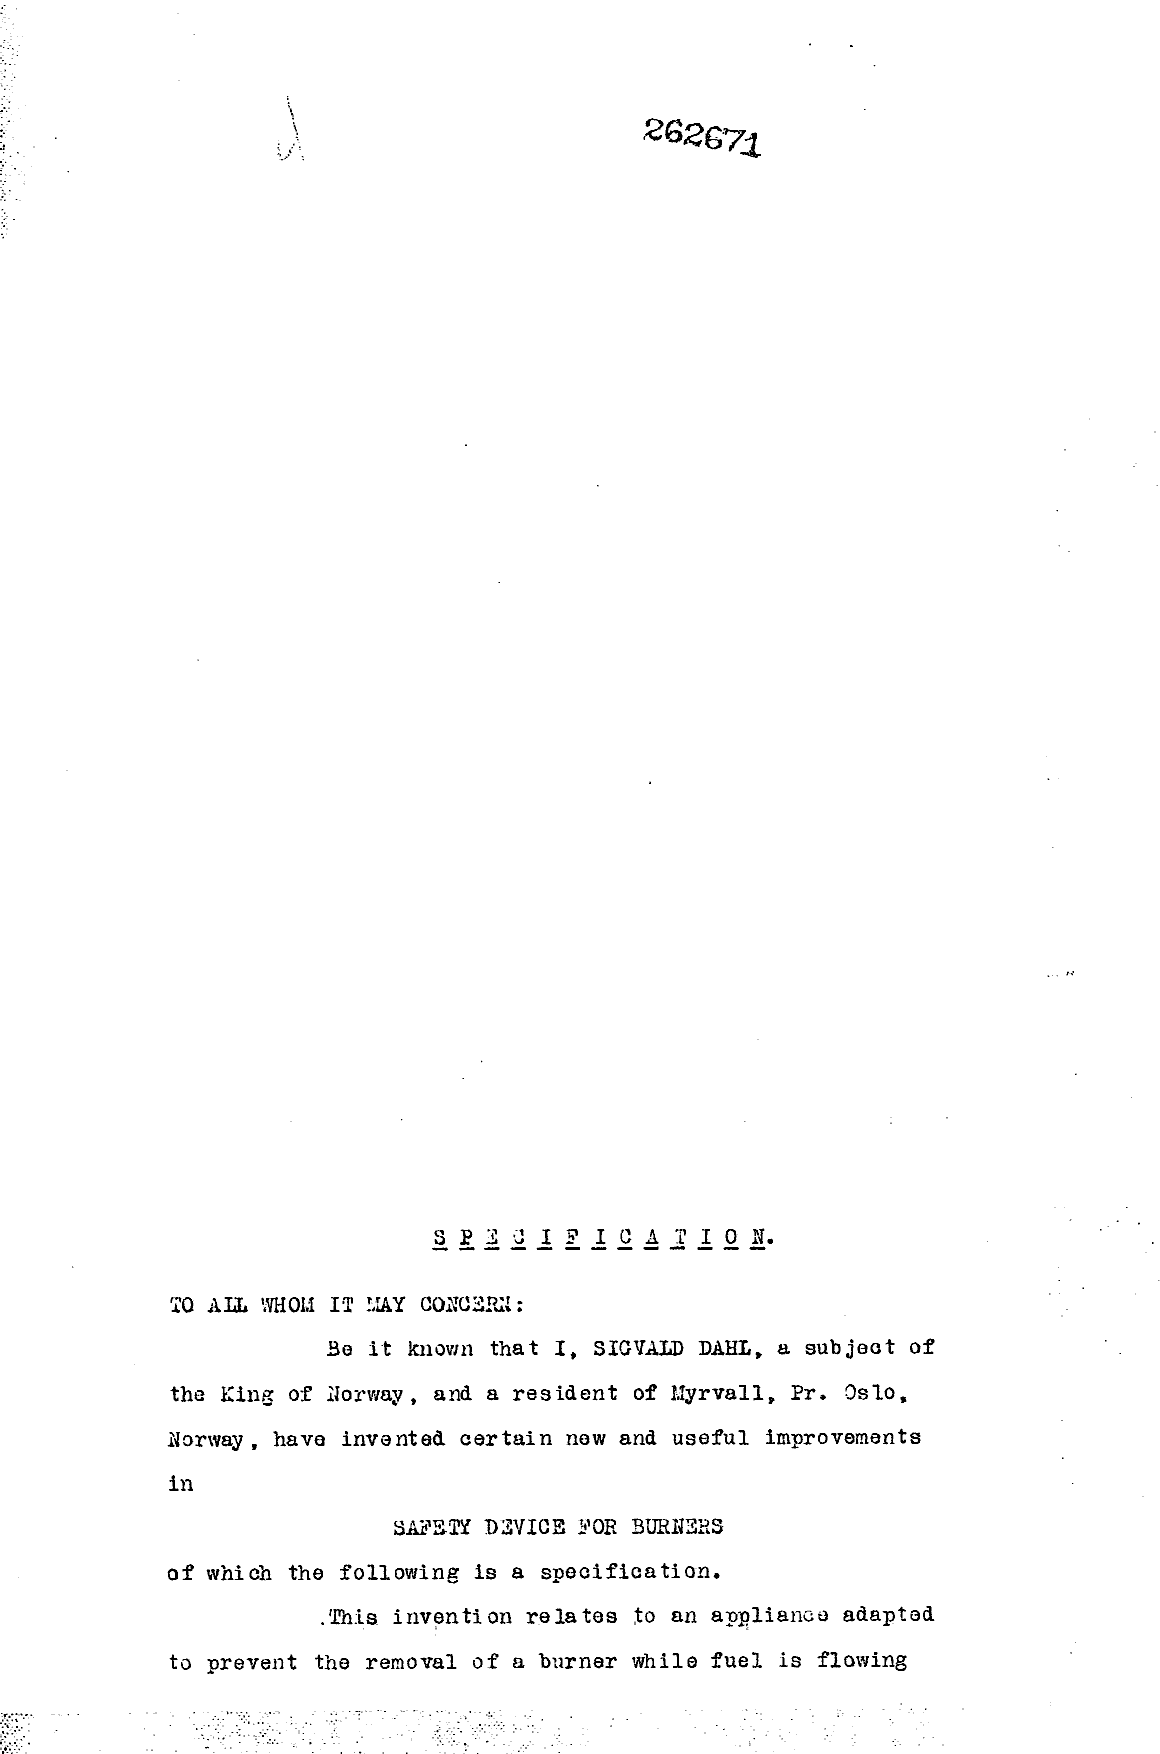 Canadian Patent Document 262671. Description 19951031. Image 1 of 6